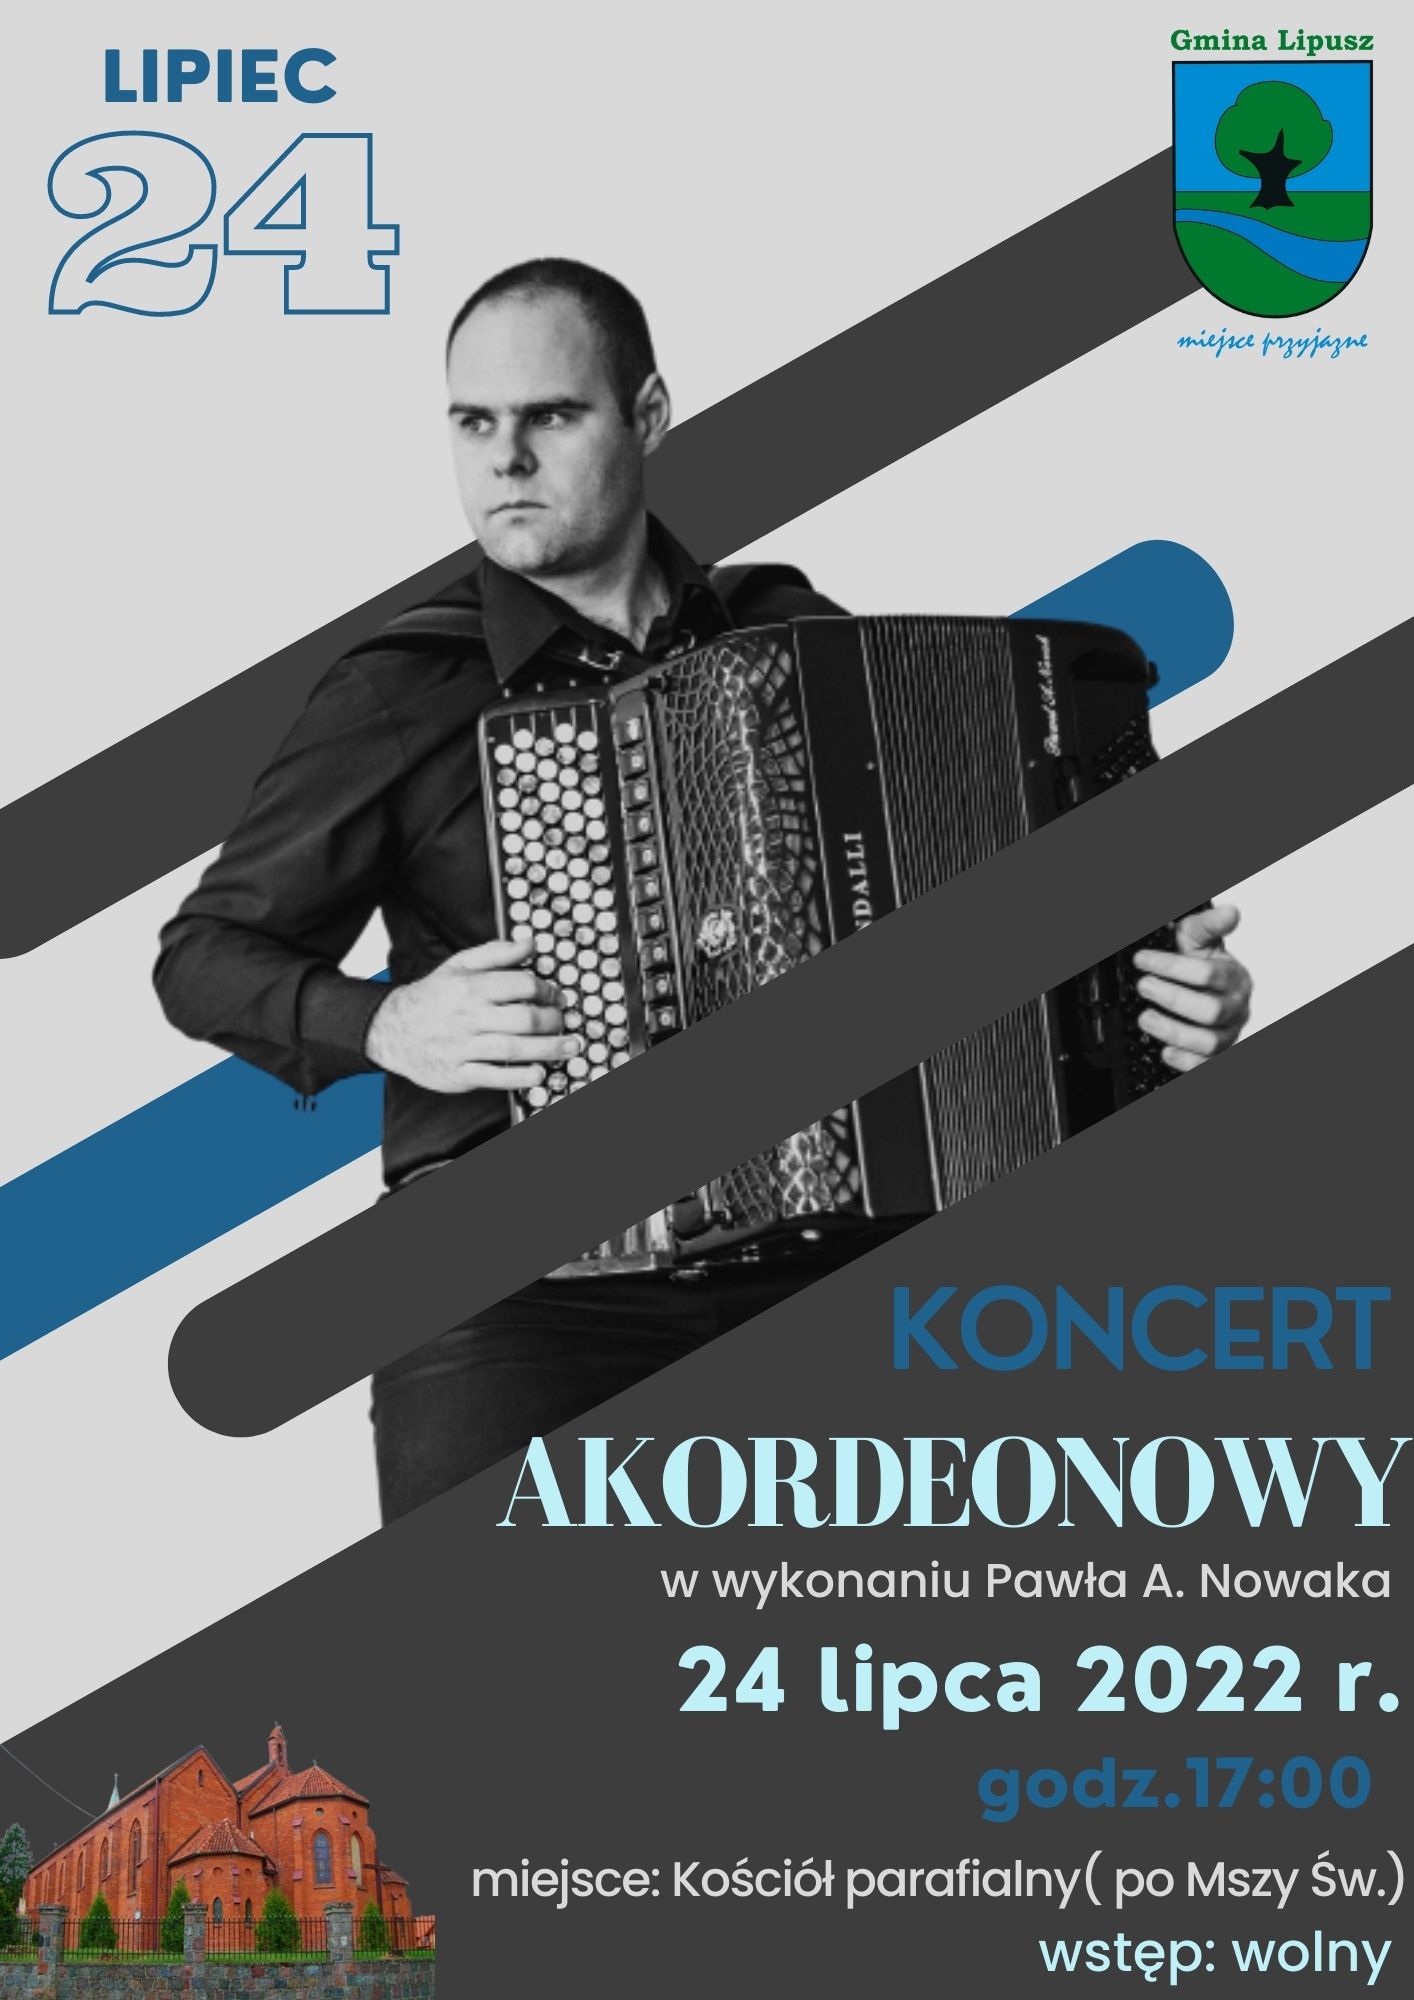 plakat z informacją o koncercie akordeonowym w wykonaniu Pawła A. Nowaka